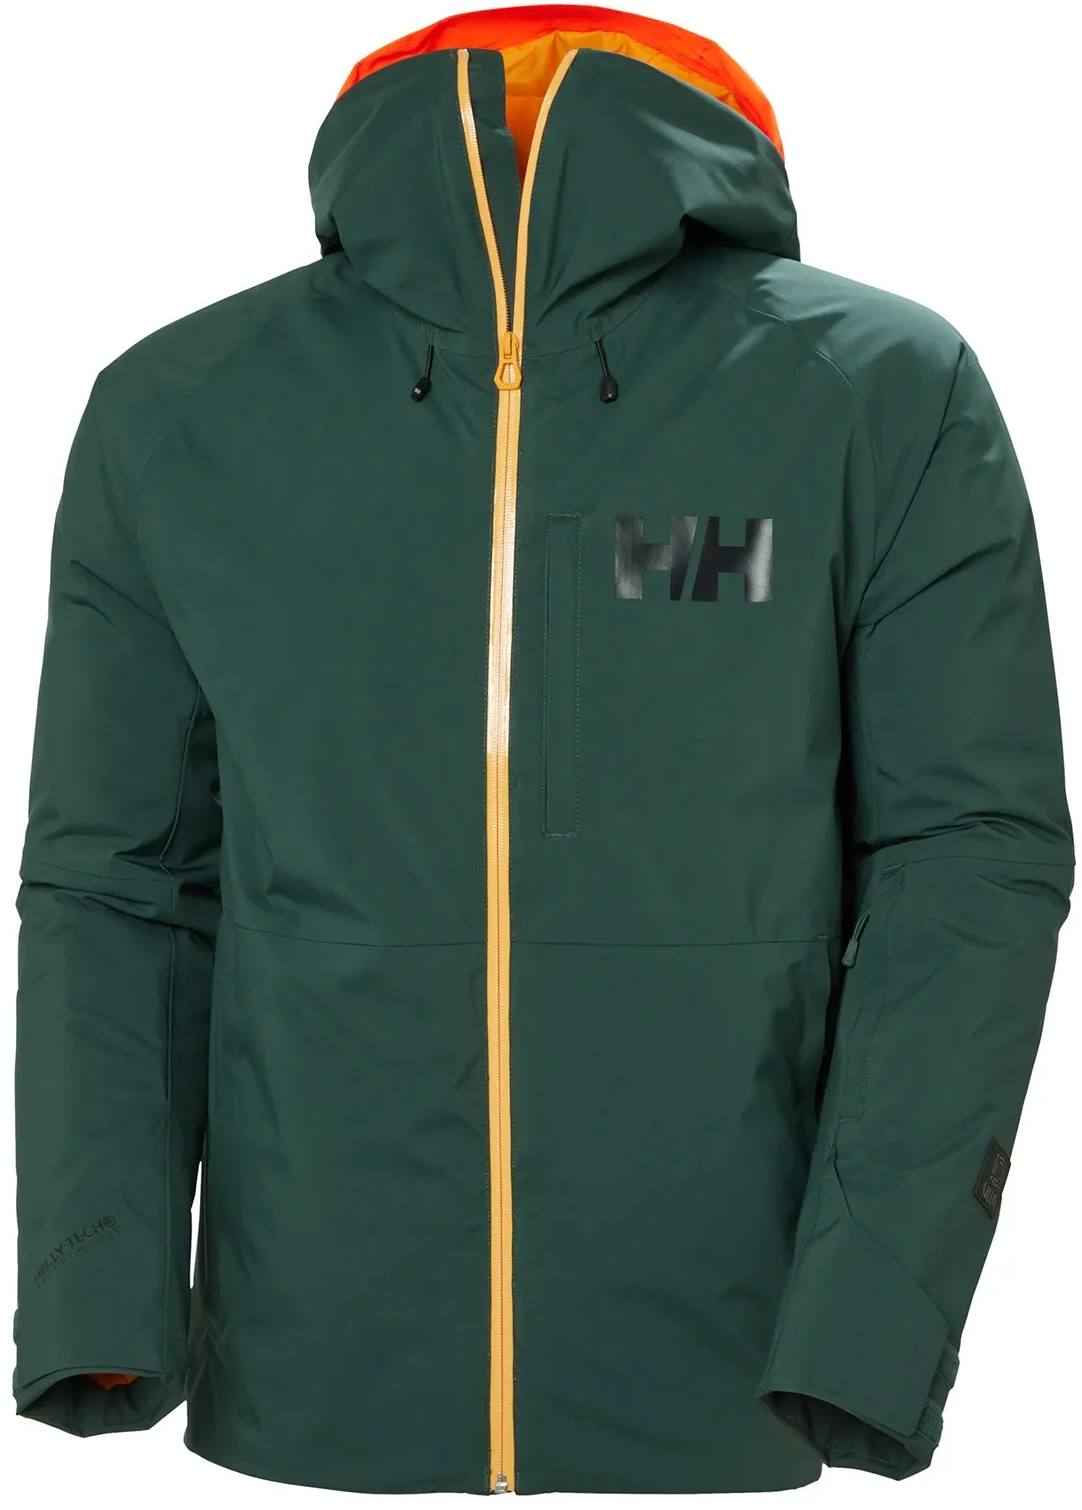 Helly Hansen Men’s Powderface Jacket Dark green M